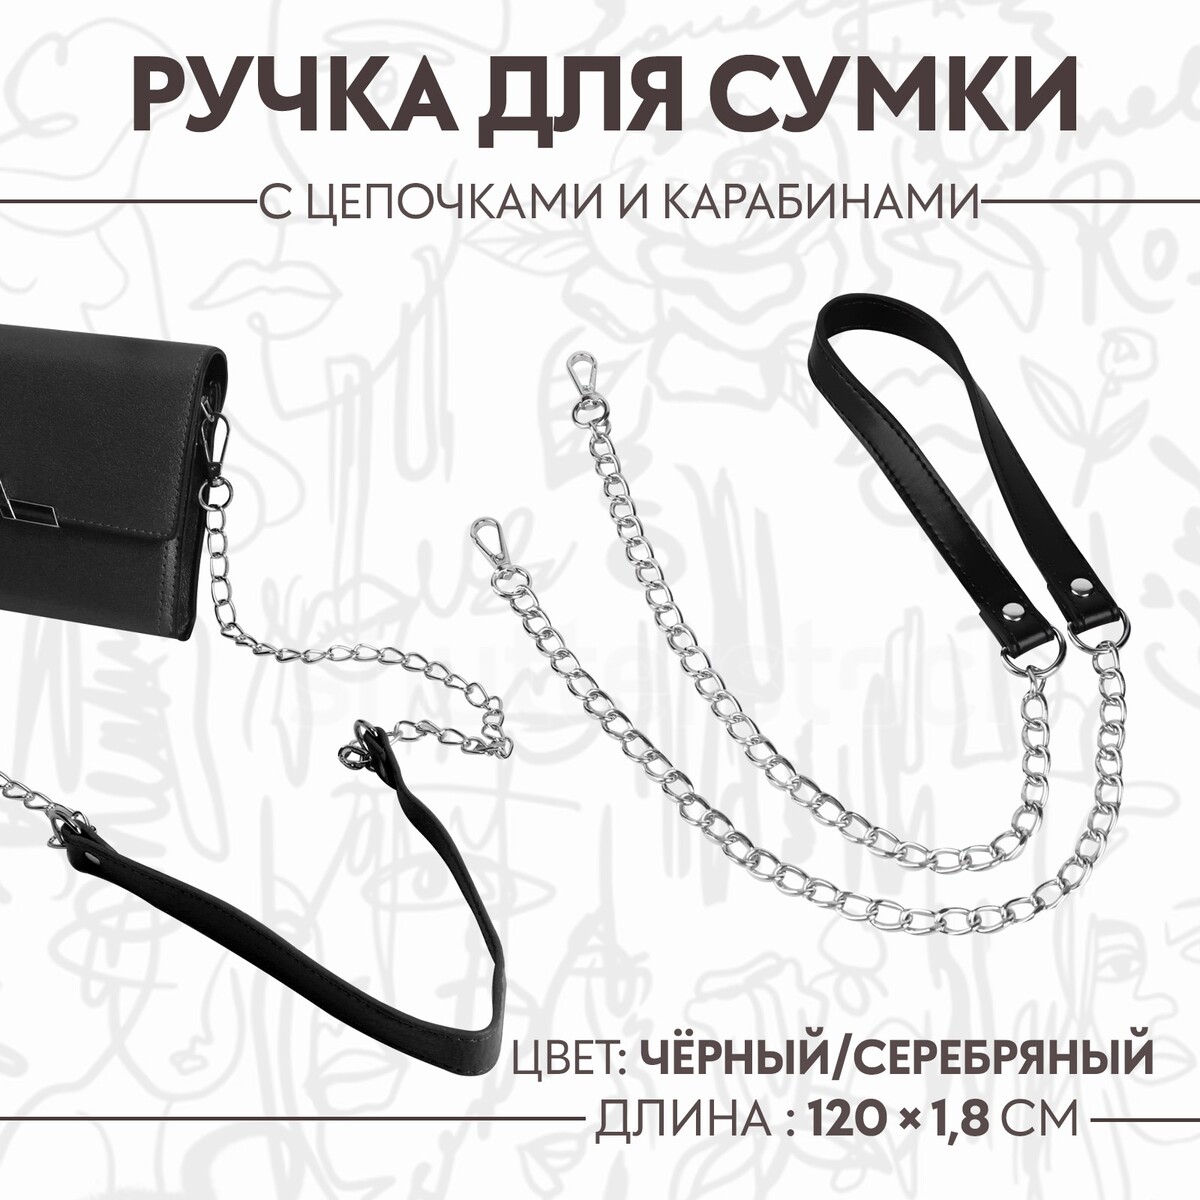 Ручка для сумки, с цепочками и карабинами, 120 × 1,8 см, цвет черный